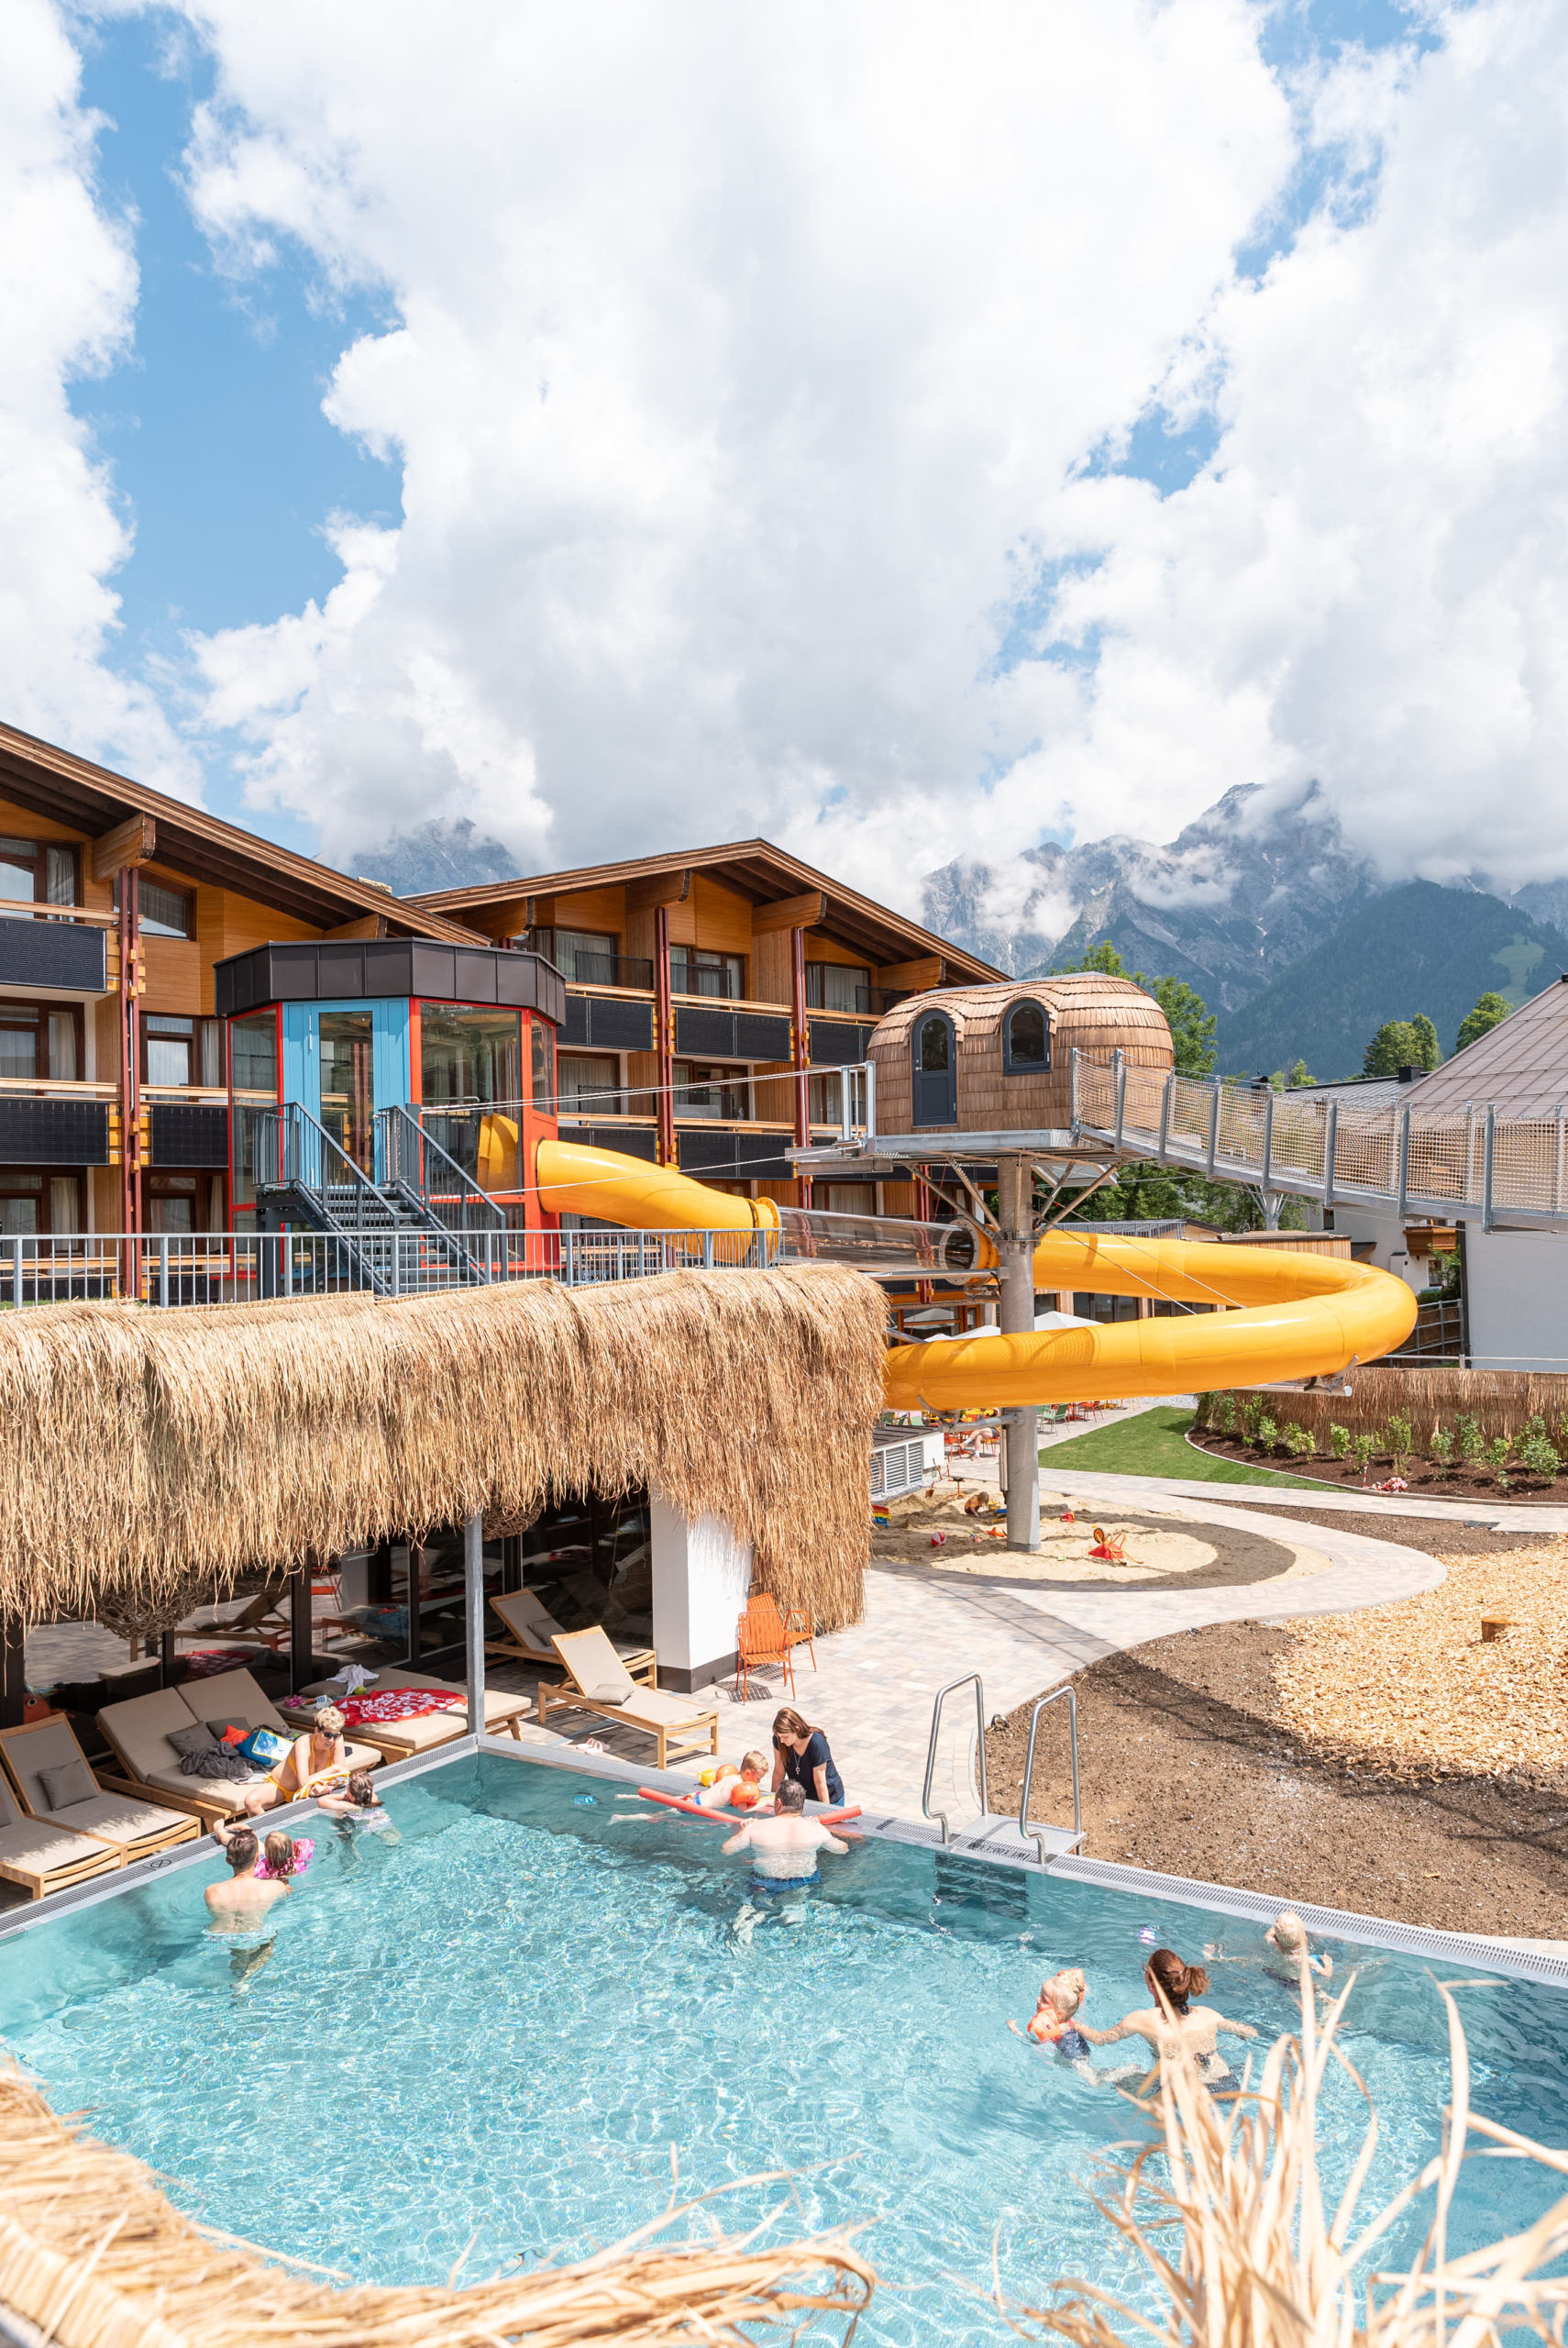 Hotel TaNte FriDa Aussenanlage mit Pool Rutsche und Baumhaus mit Haengebruecke ©Eder Hotels GmbH scaled